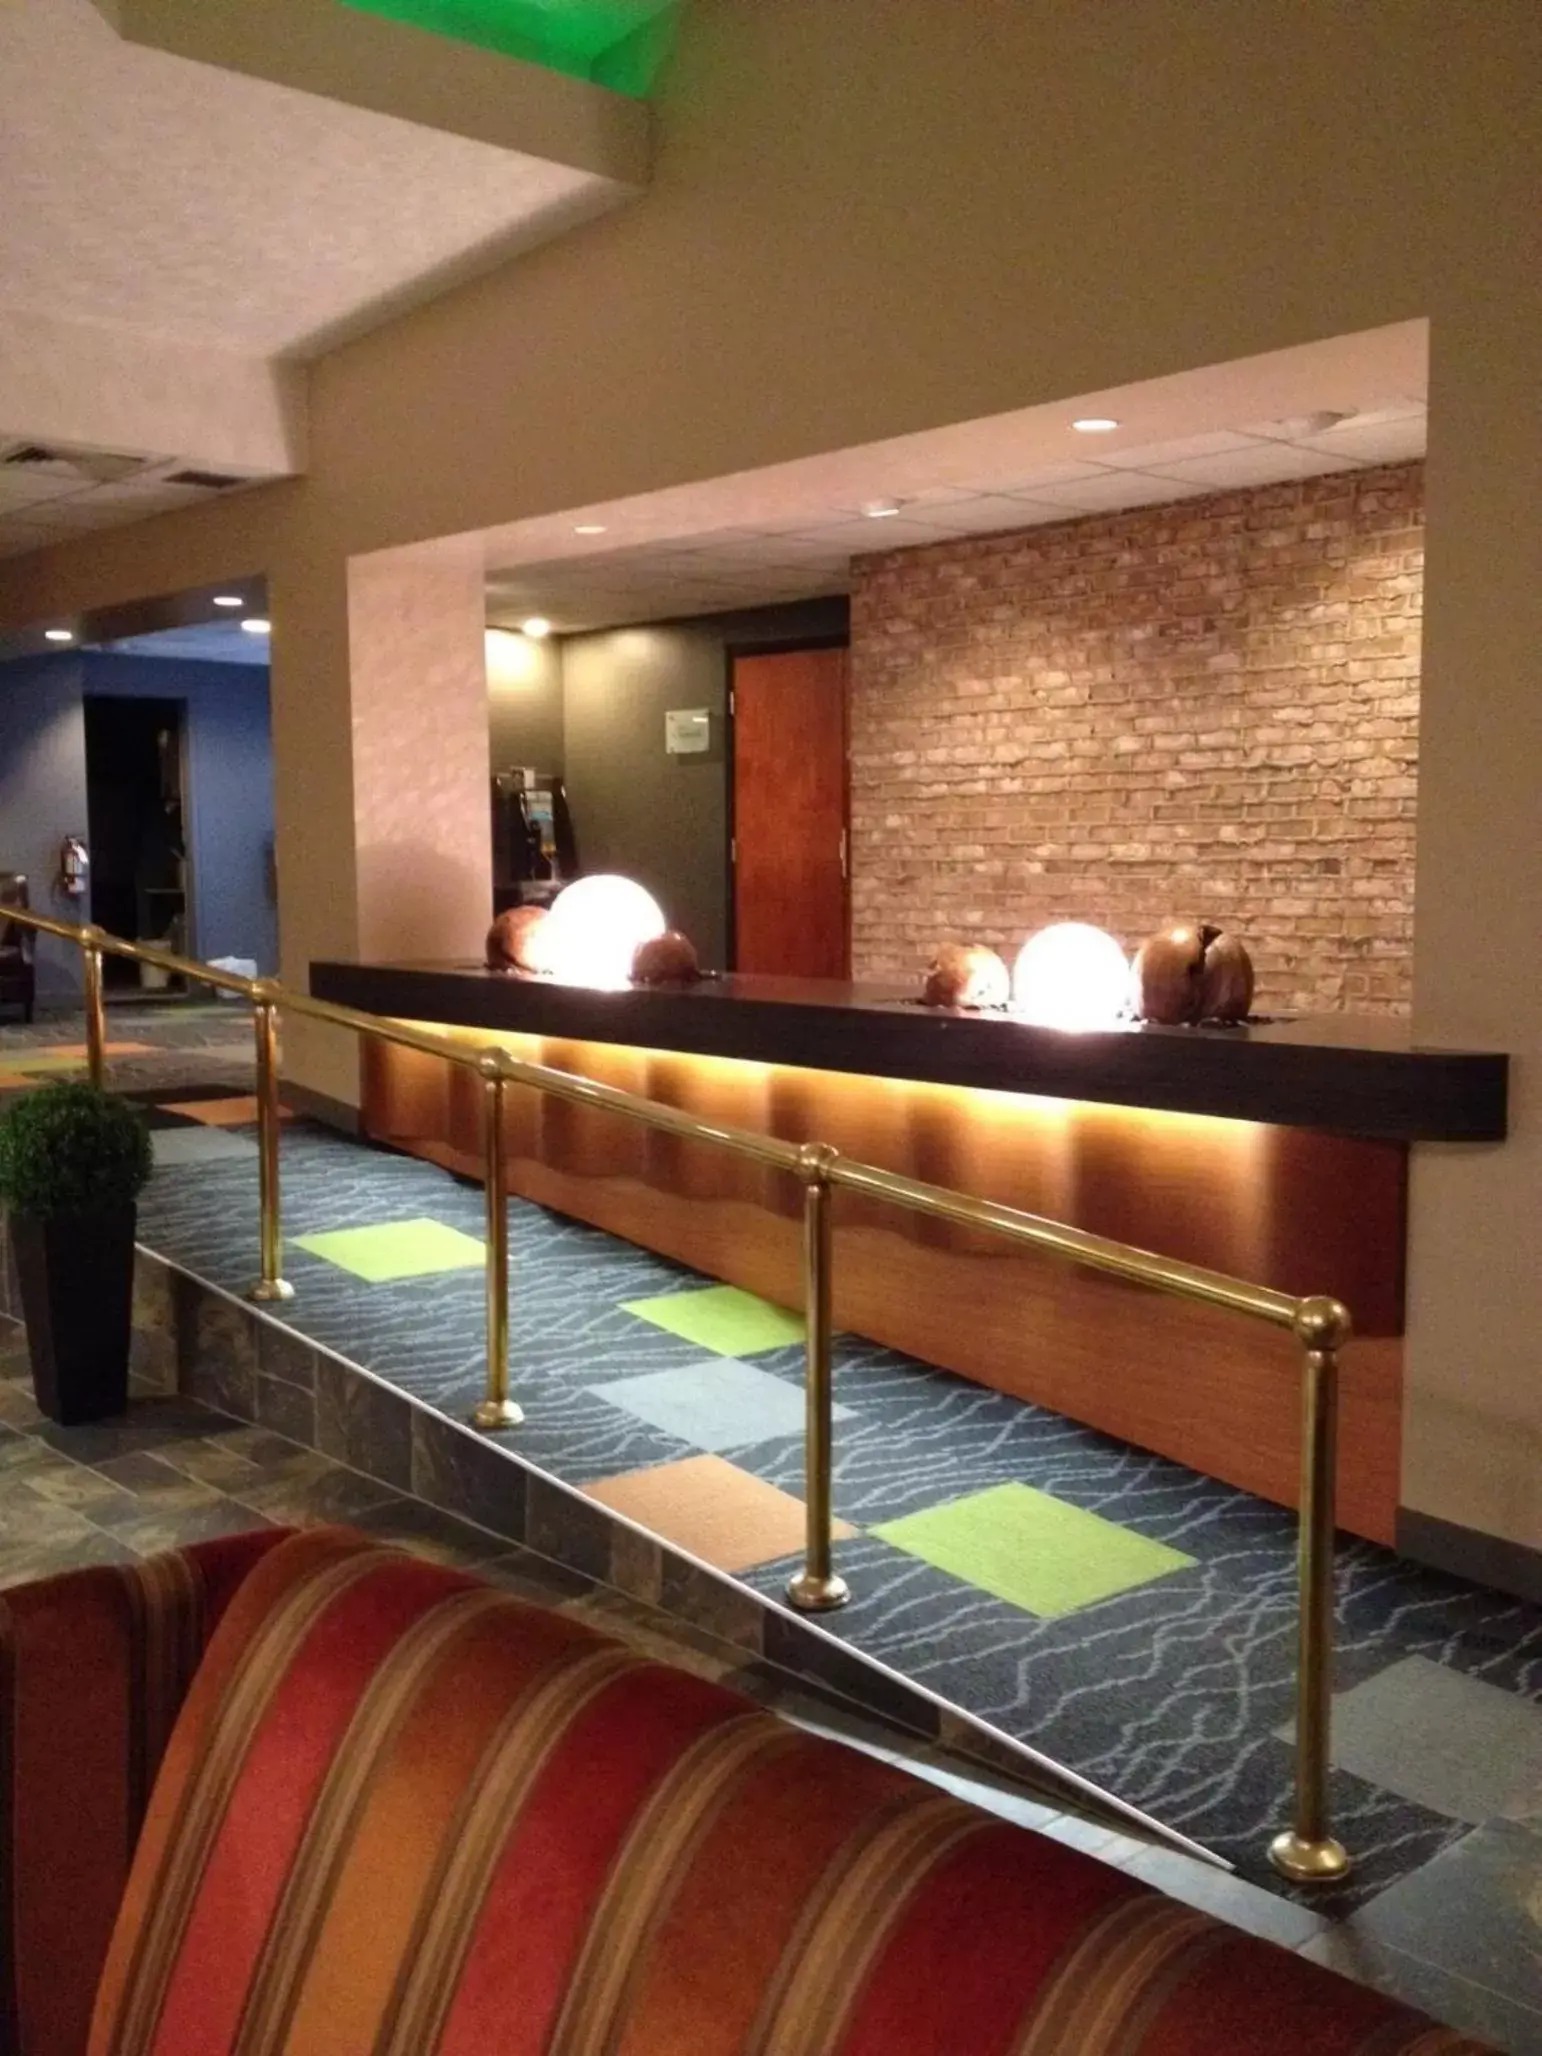 Lobby or reception, Lobby/Reception in Quality Inn Rouyn-Noranda